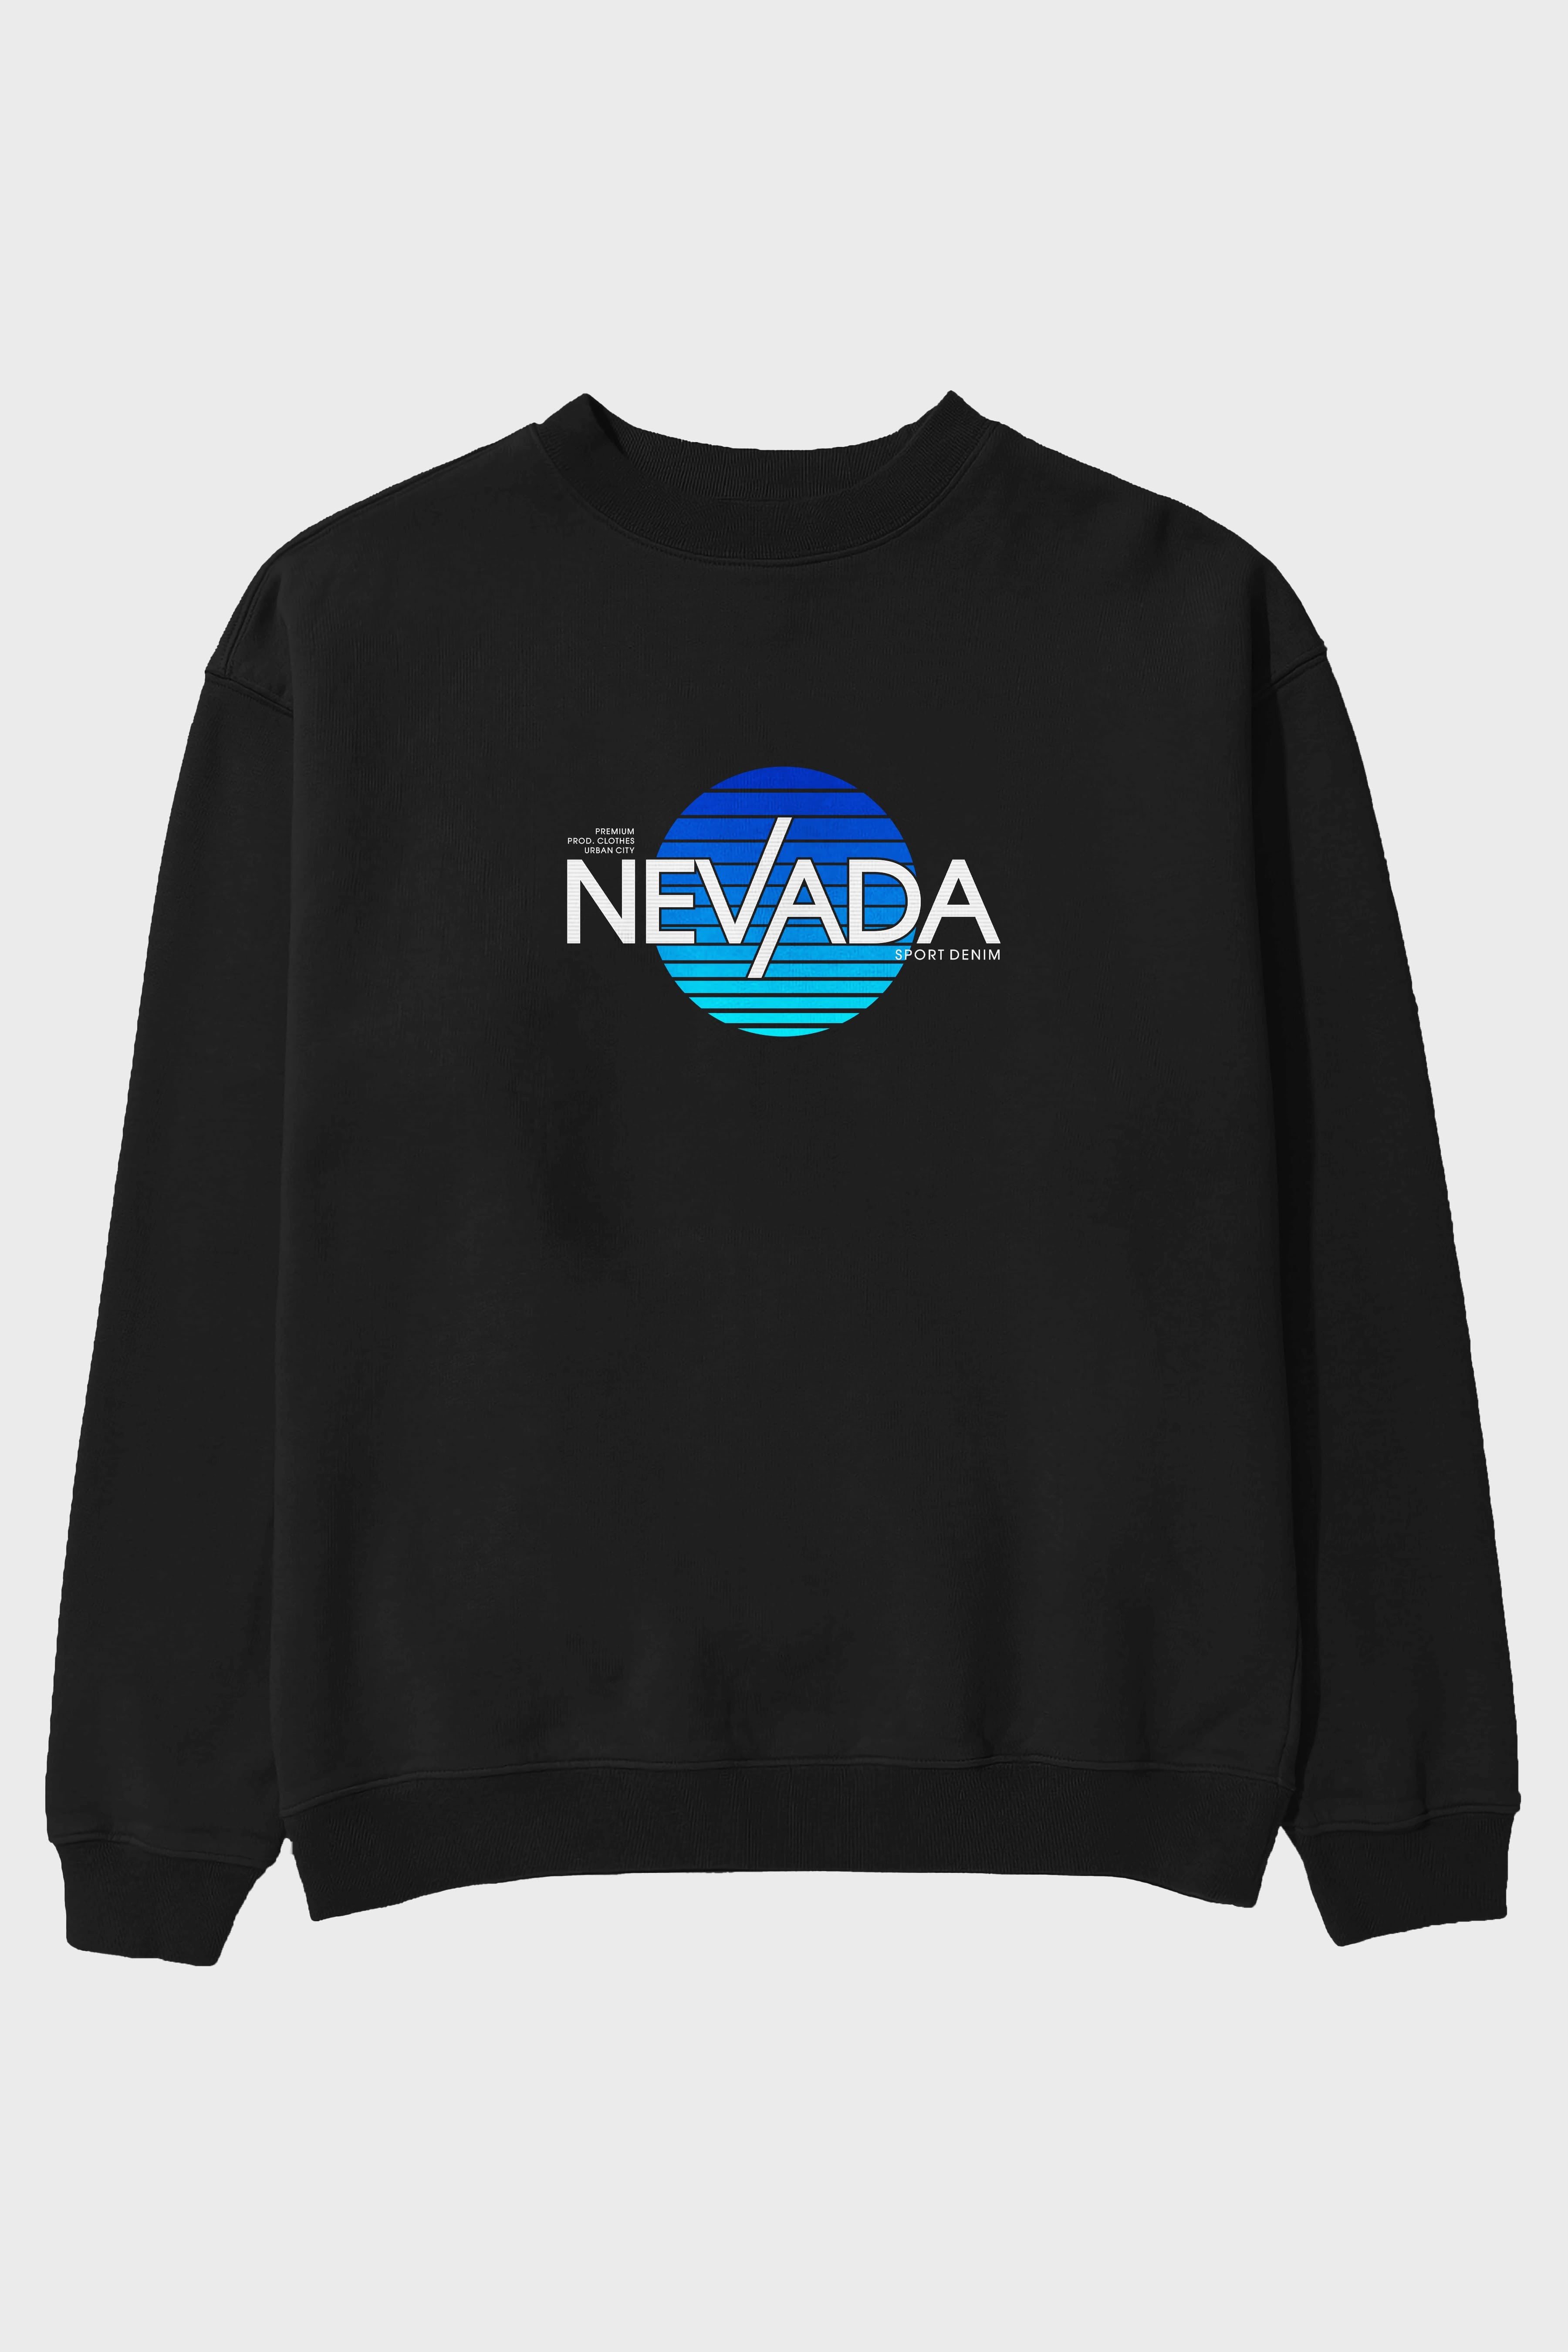 Nevada Ön Baskılı Oversize Sweatshirt Erkek Kadın Unisex